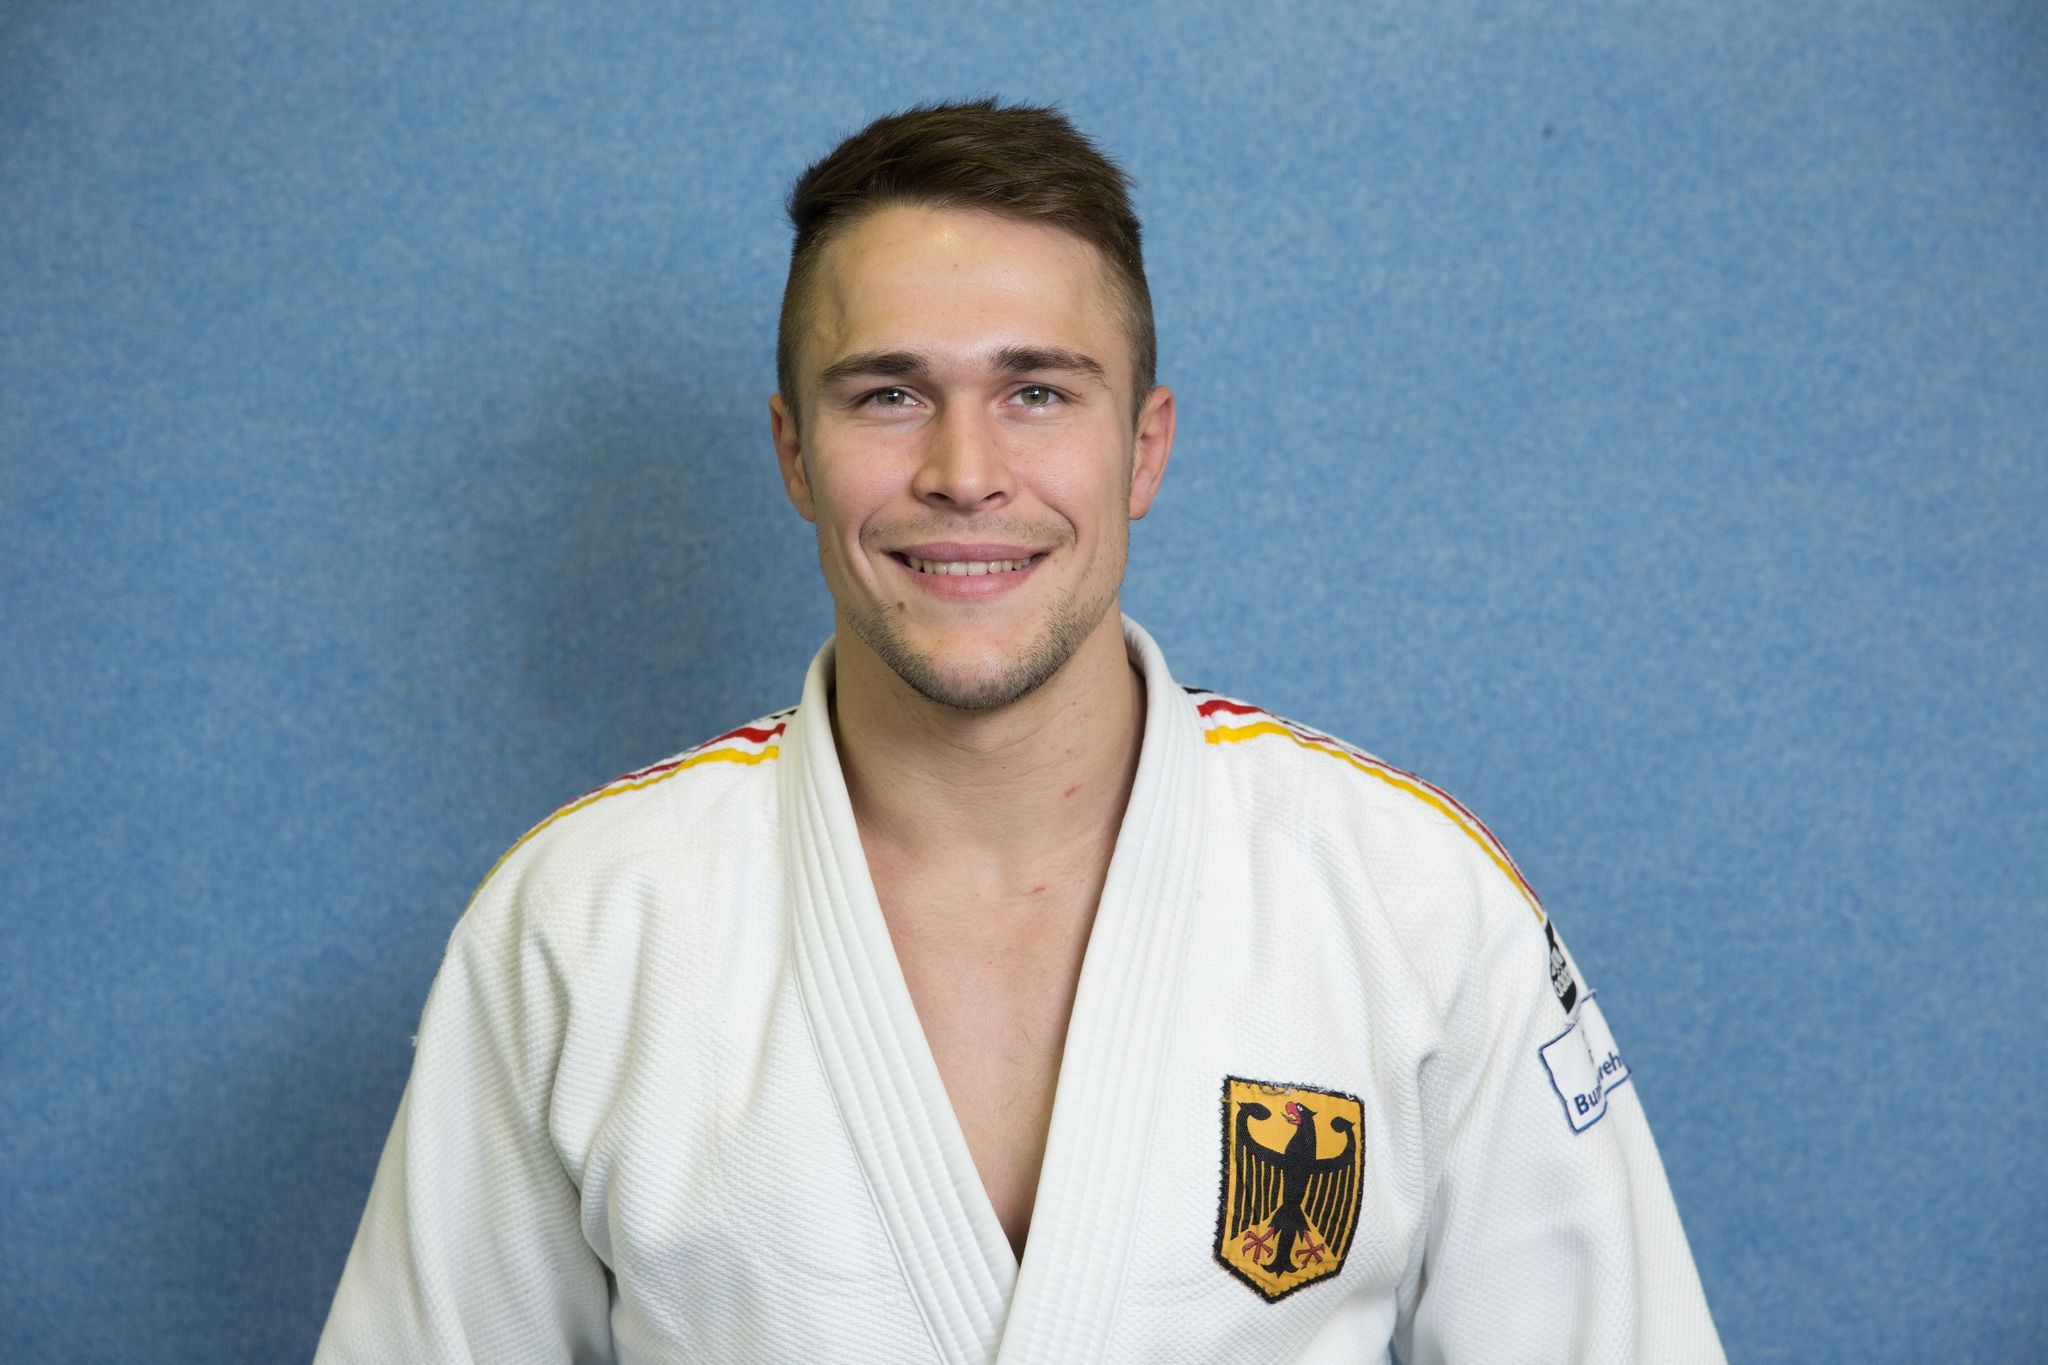 Judoka Alexander Wieczerzak holte bei der EM mit dem Mixed-Team die Bronzemedaille.